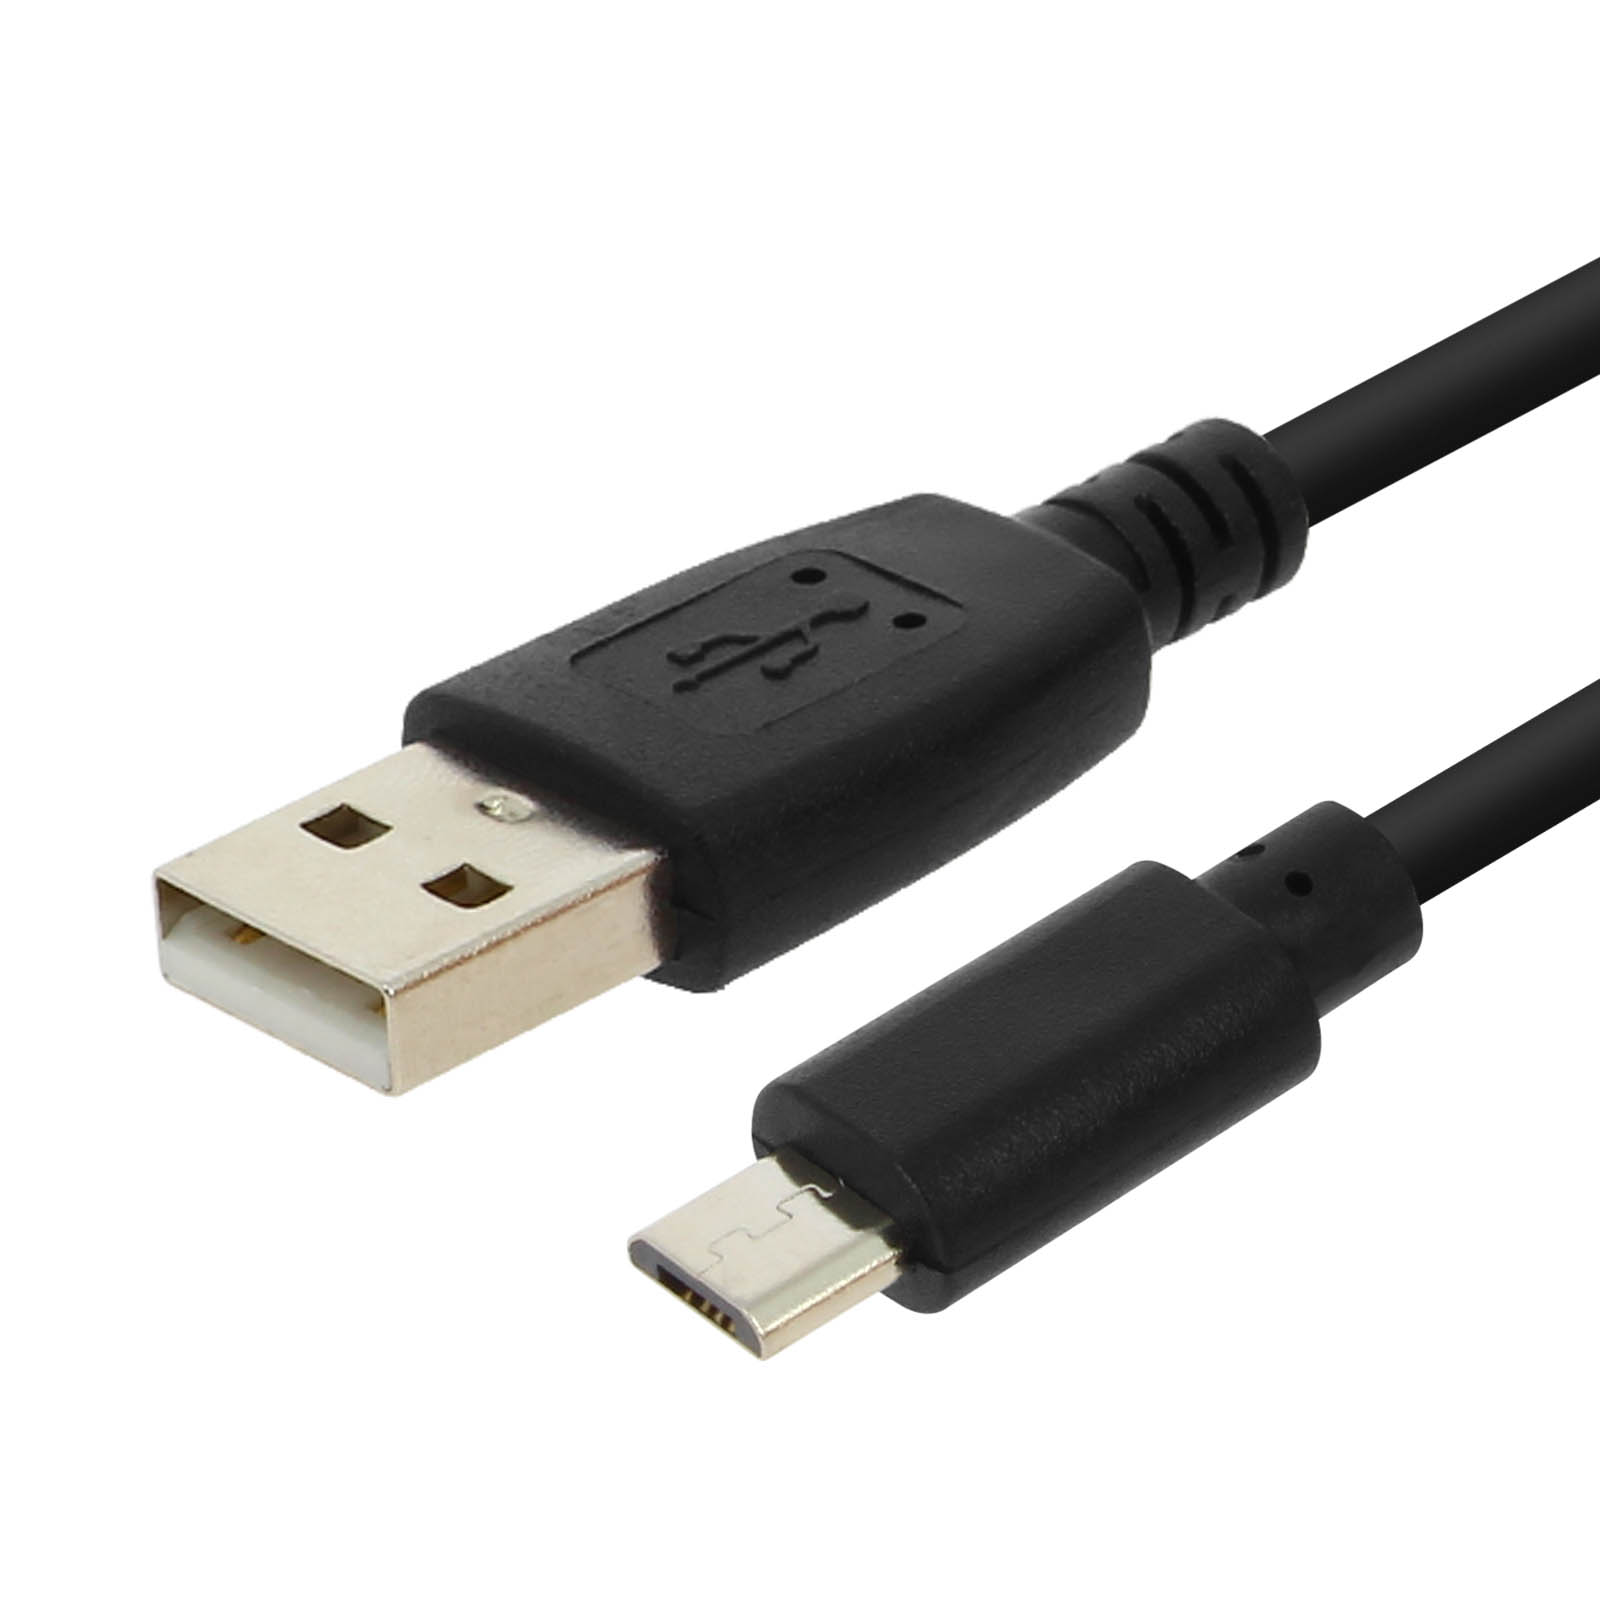 Chargeur secteur 1A 1 Port USB 5W - Norme CE ROHS Sans Blister